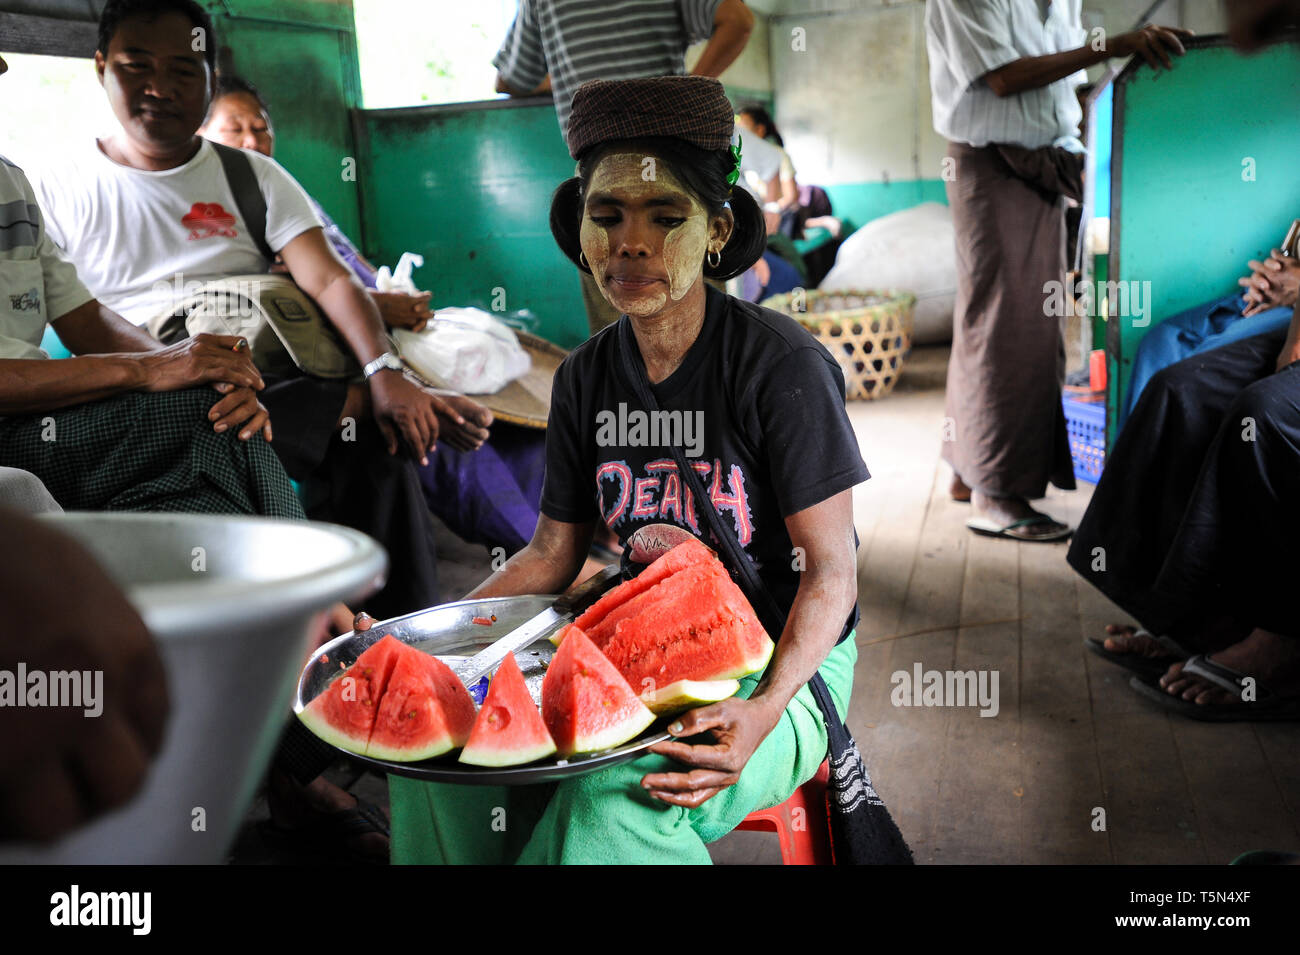 02.09.2013, Yangon, Republik der Union Myanmar, Asien - eine Frau ist verkaufen Scheiben Wassermelone in einem Zugabteil auf der Circle Line. Stockfoto